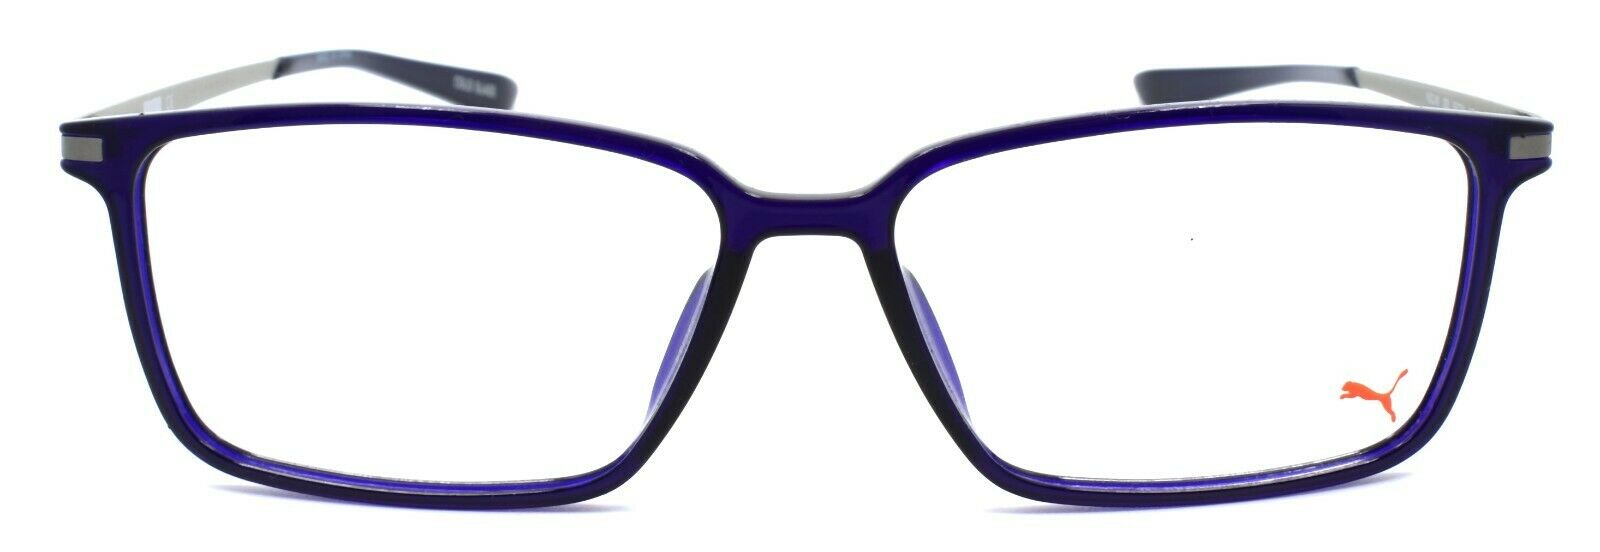 2-PUMA PU0114O 003 Eyeglasses Frames 55-14-145 Blue / Silver-889652063584-IKSpecs